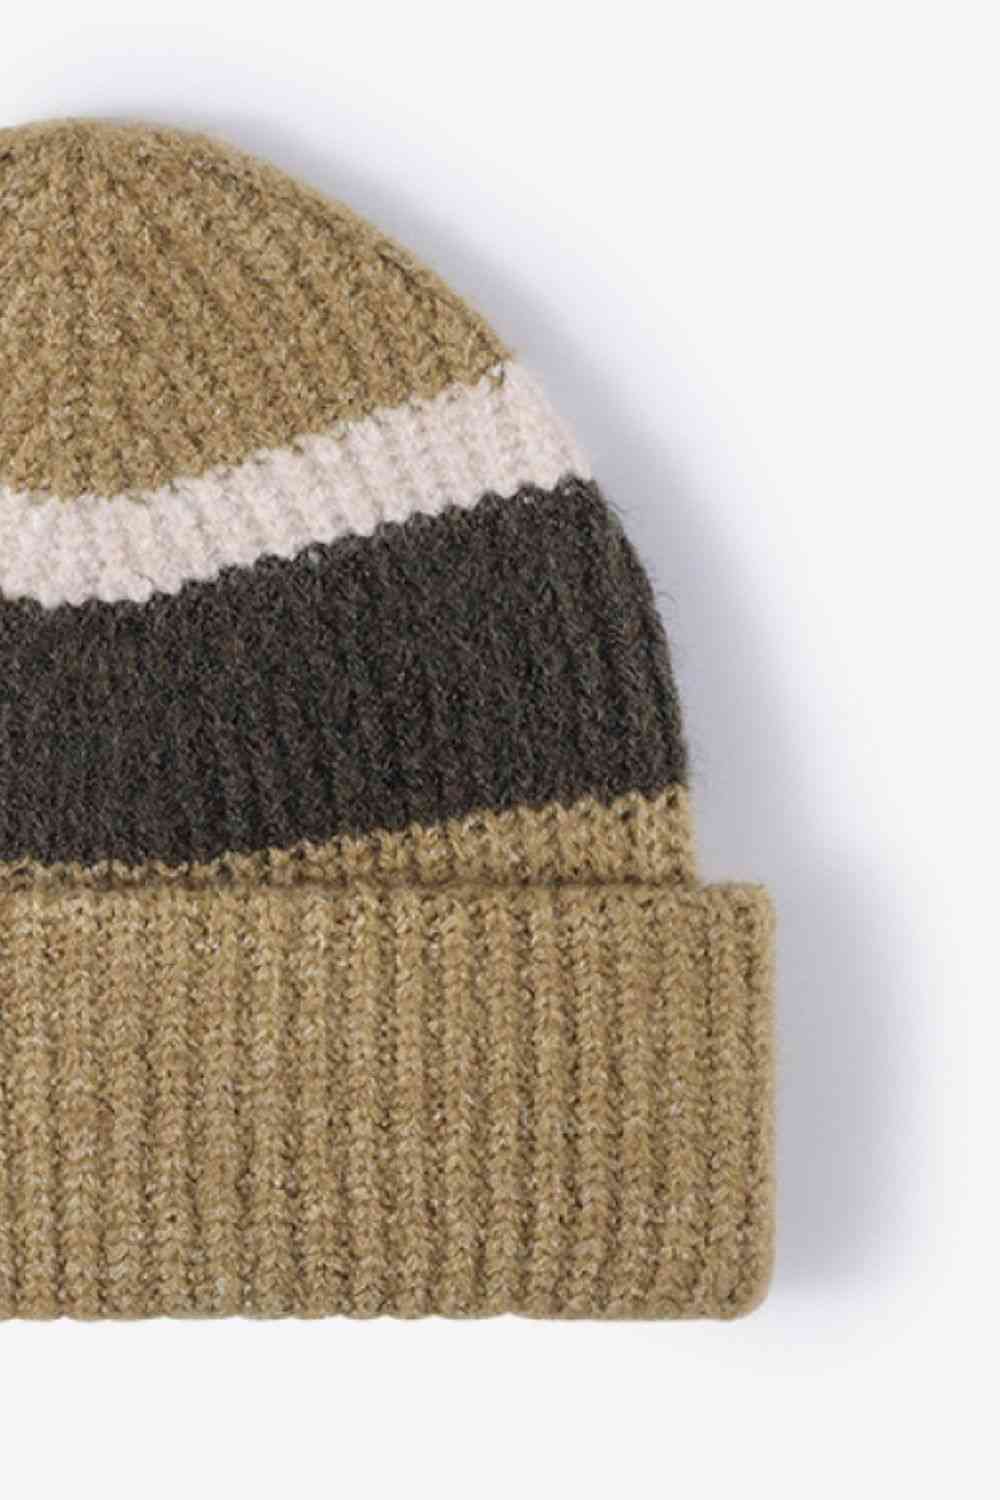 EZBeanie Tricolor Cuffed Hat Knit Beanie